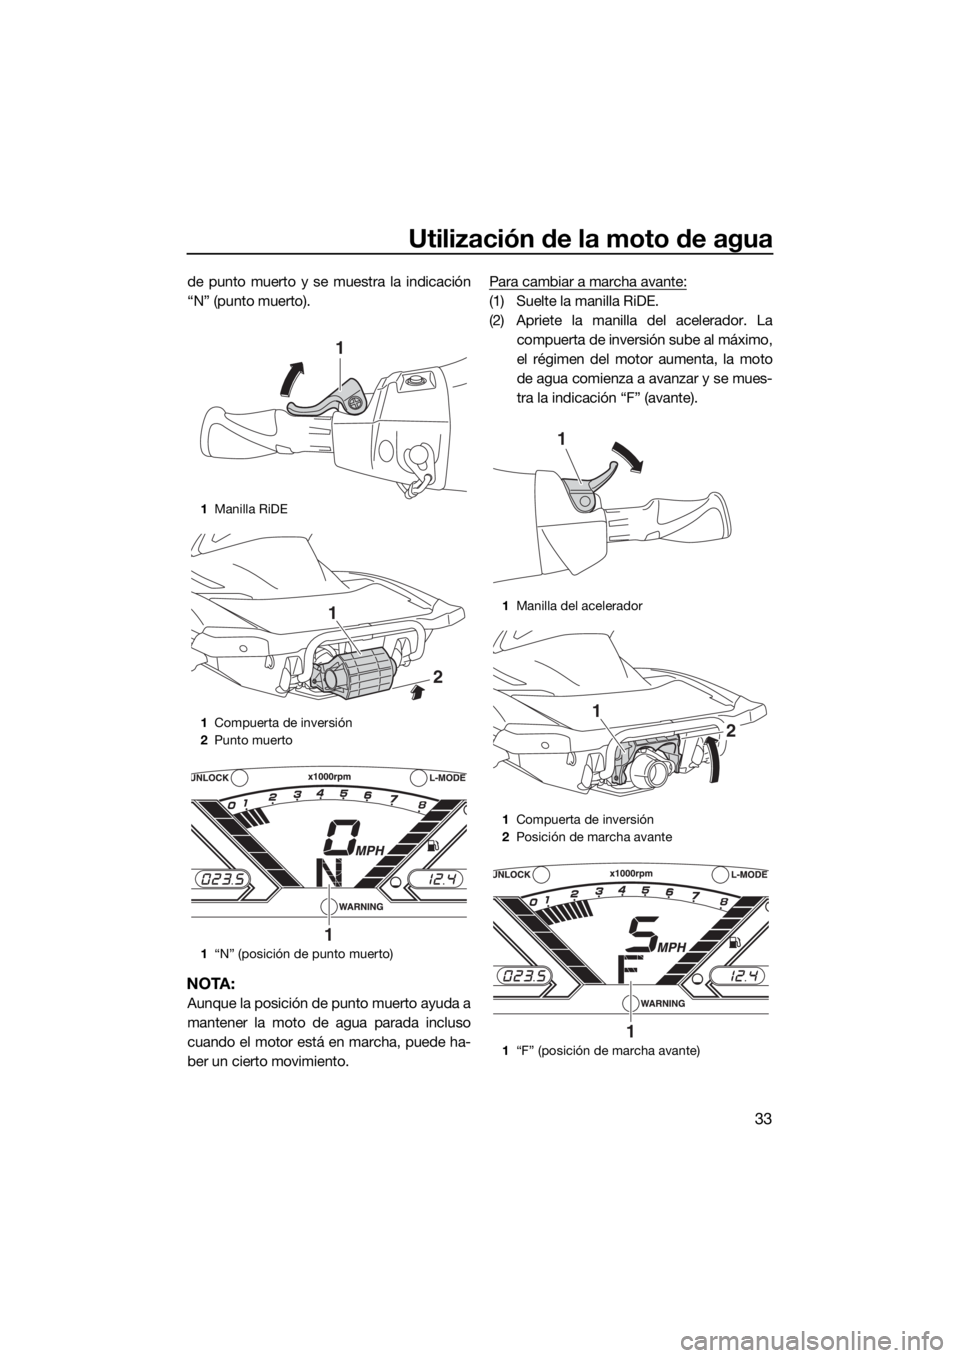 YAMAHA VX 2018  Manuale de Empleo (in Spanish) Utilización de la moto de agua
33
de punto muerto y se muestra la indicación
“N” (punto muerto).
NOTA:
Aunque la posición de punto muerto ayuda a
mantener la moto de agua parada incluso
cuando 